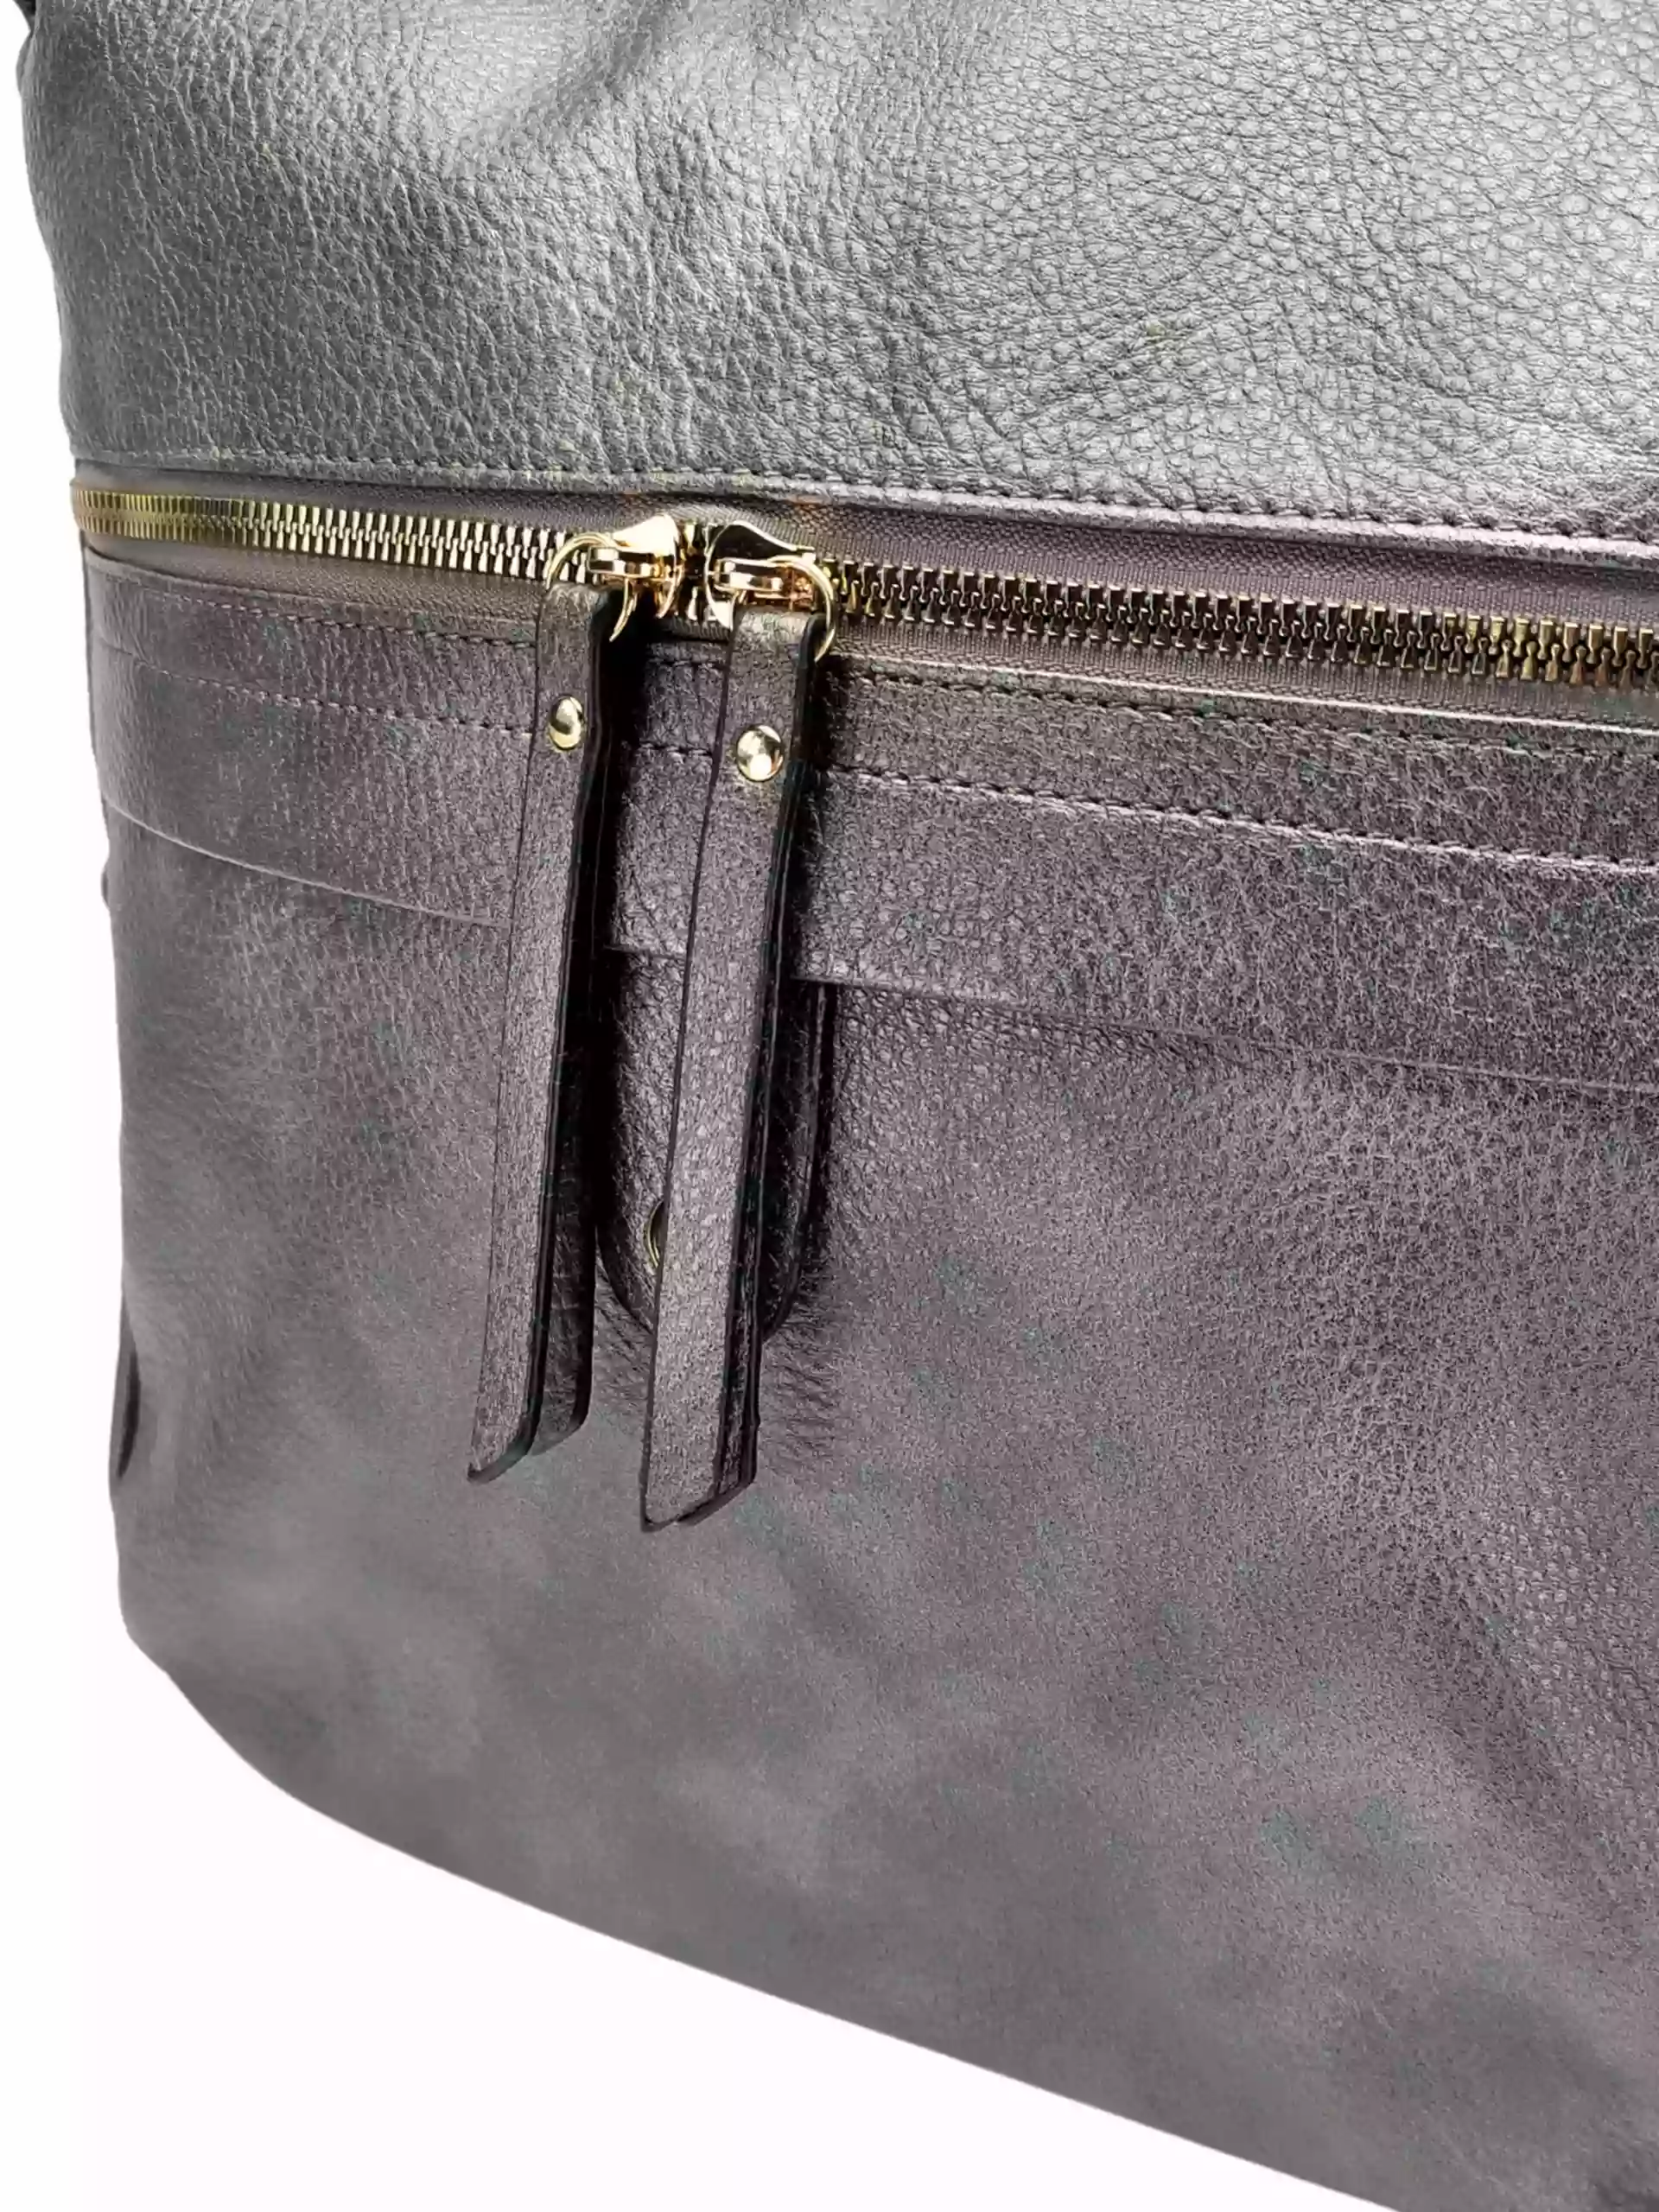 Velký stříbrný kabelko-batoh 2v1 s kapsou, Int. Company, H23, detail kabelko-batohu